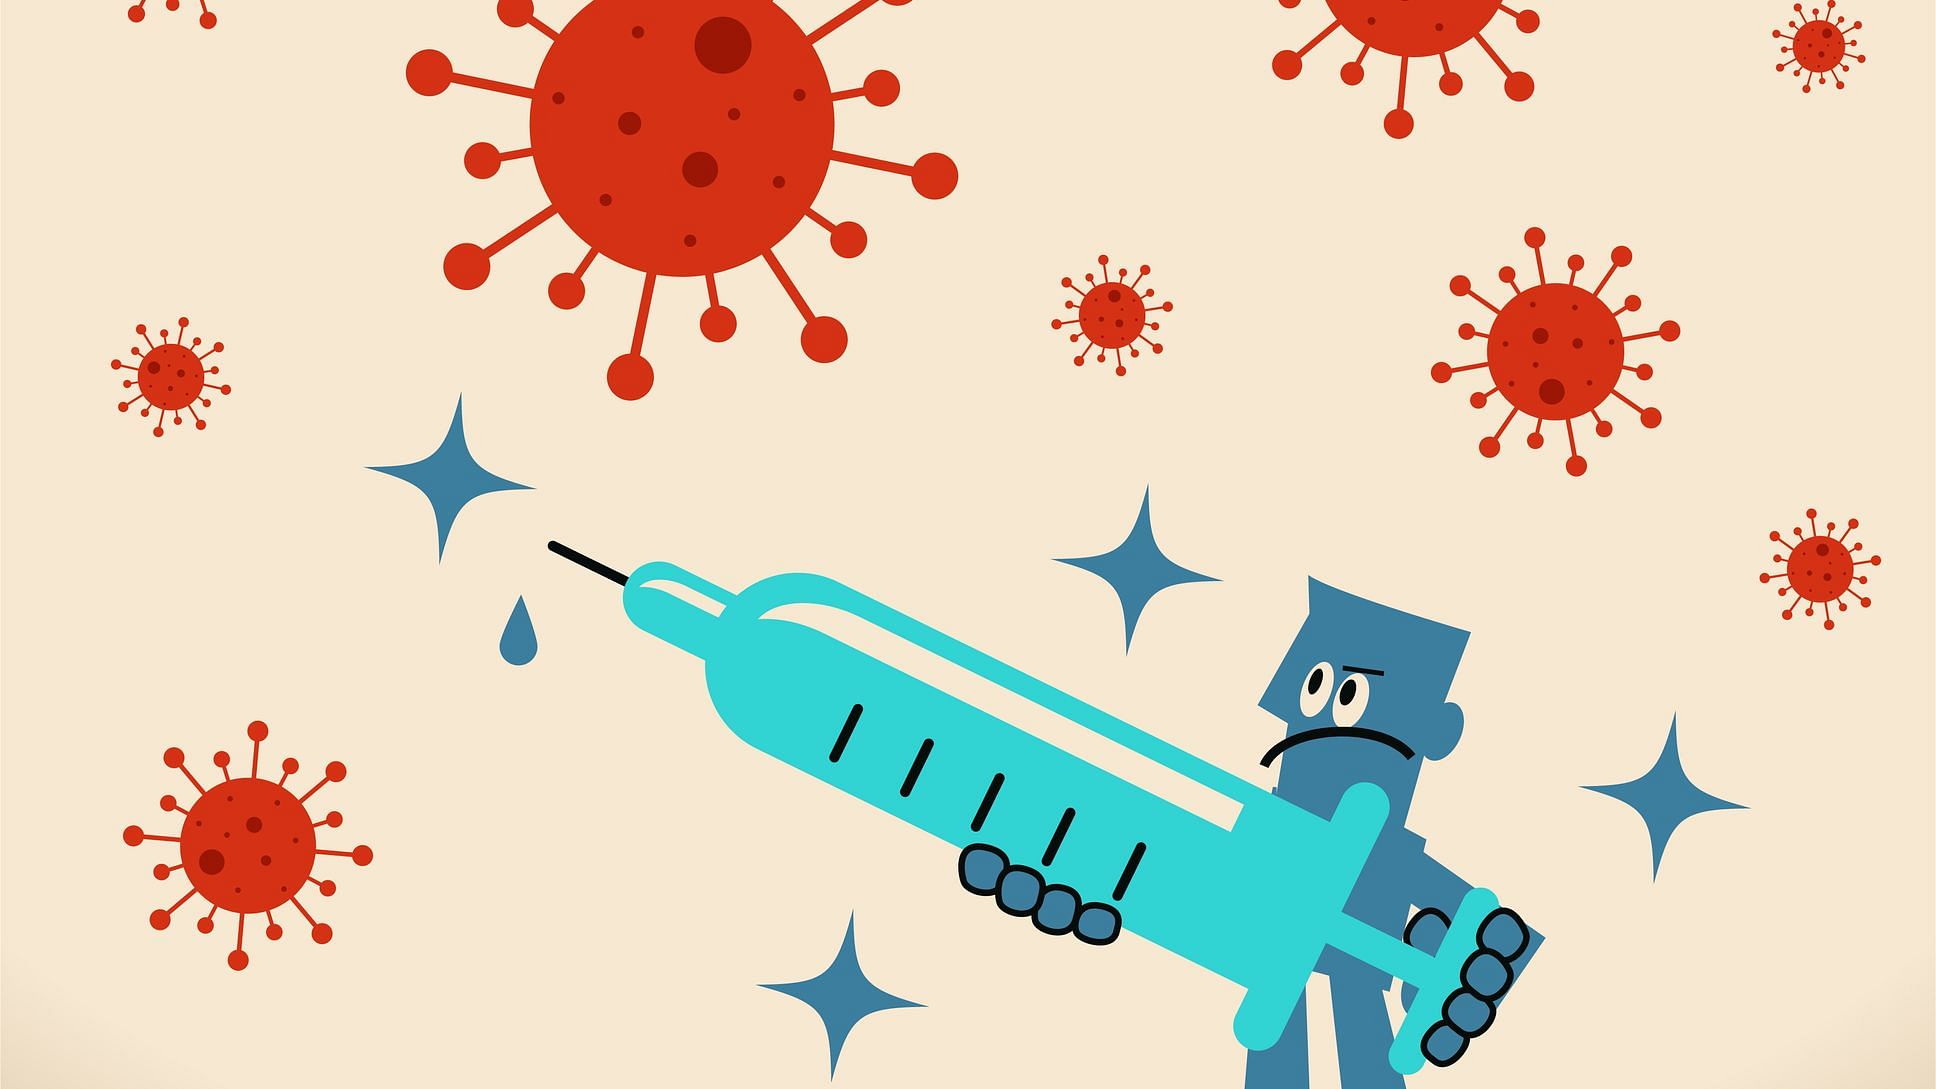 एंटीबॉडीज, शरीर में संक्रमण को रोकने में मदद करने वाले इम्यून सिस्टम के प्रोटीन हैं